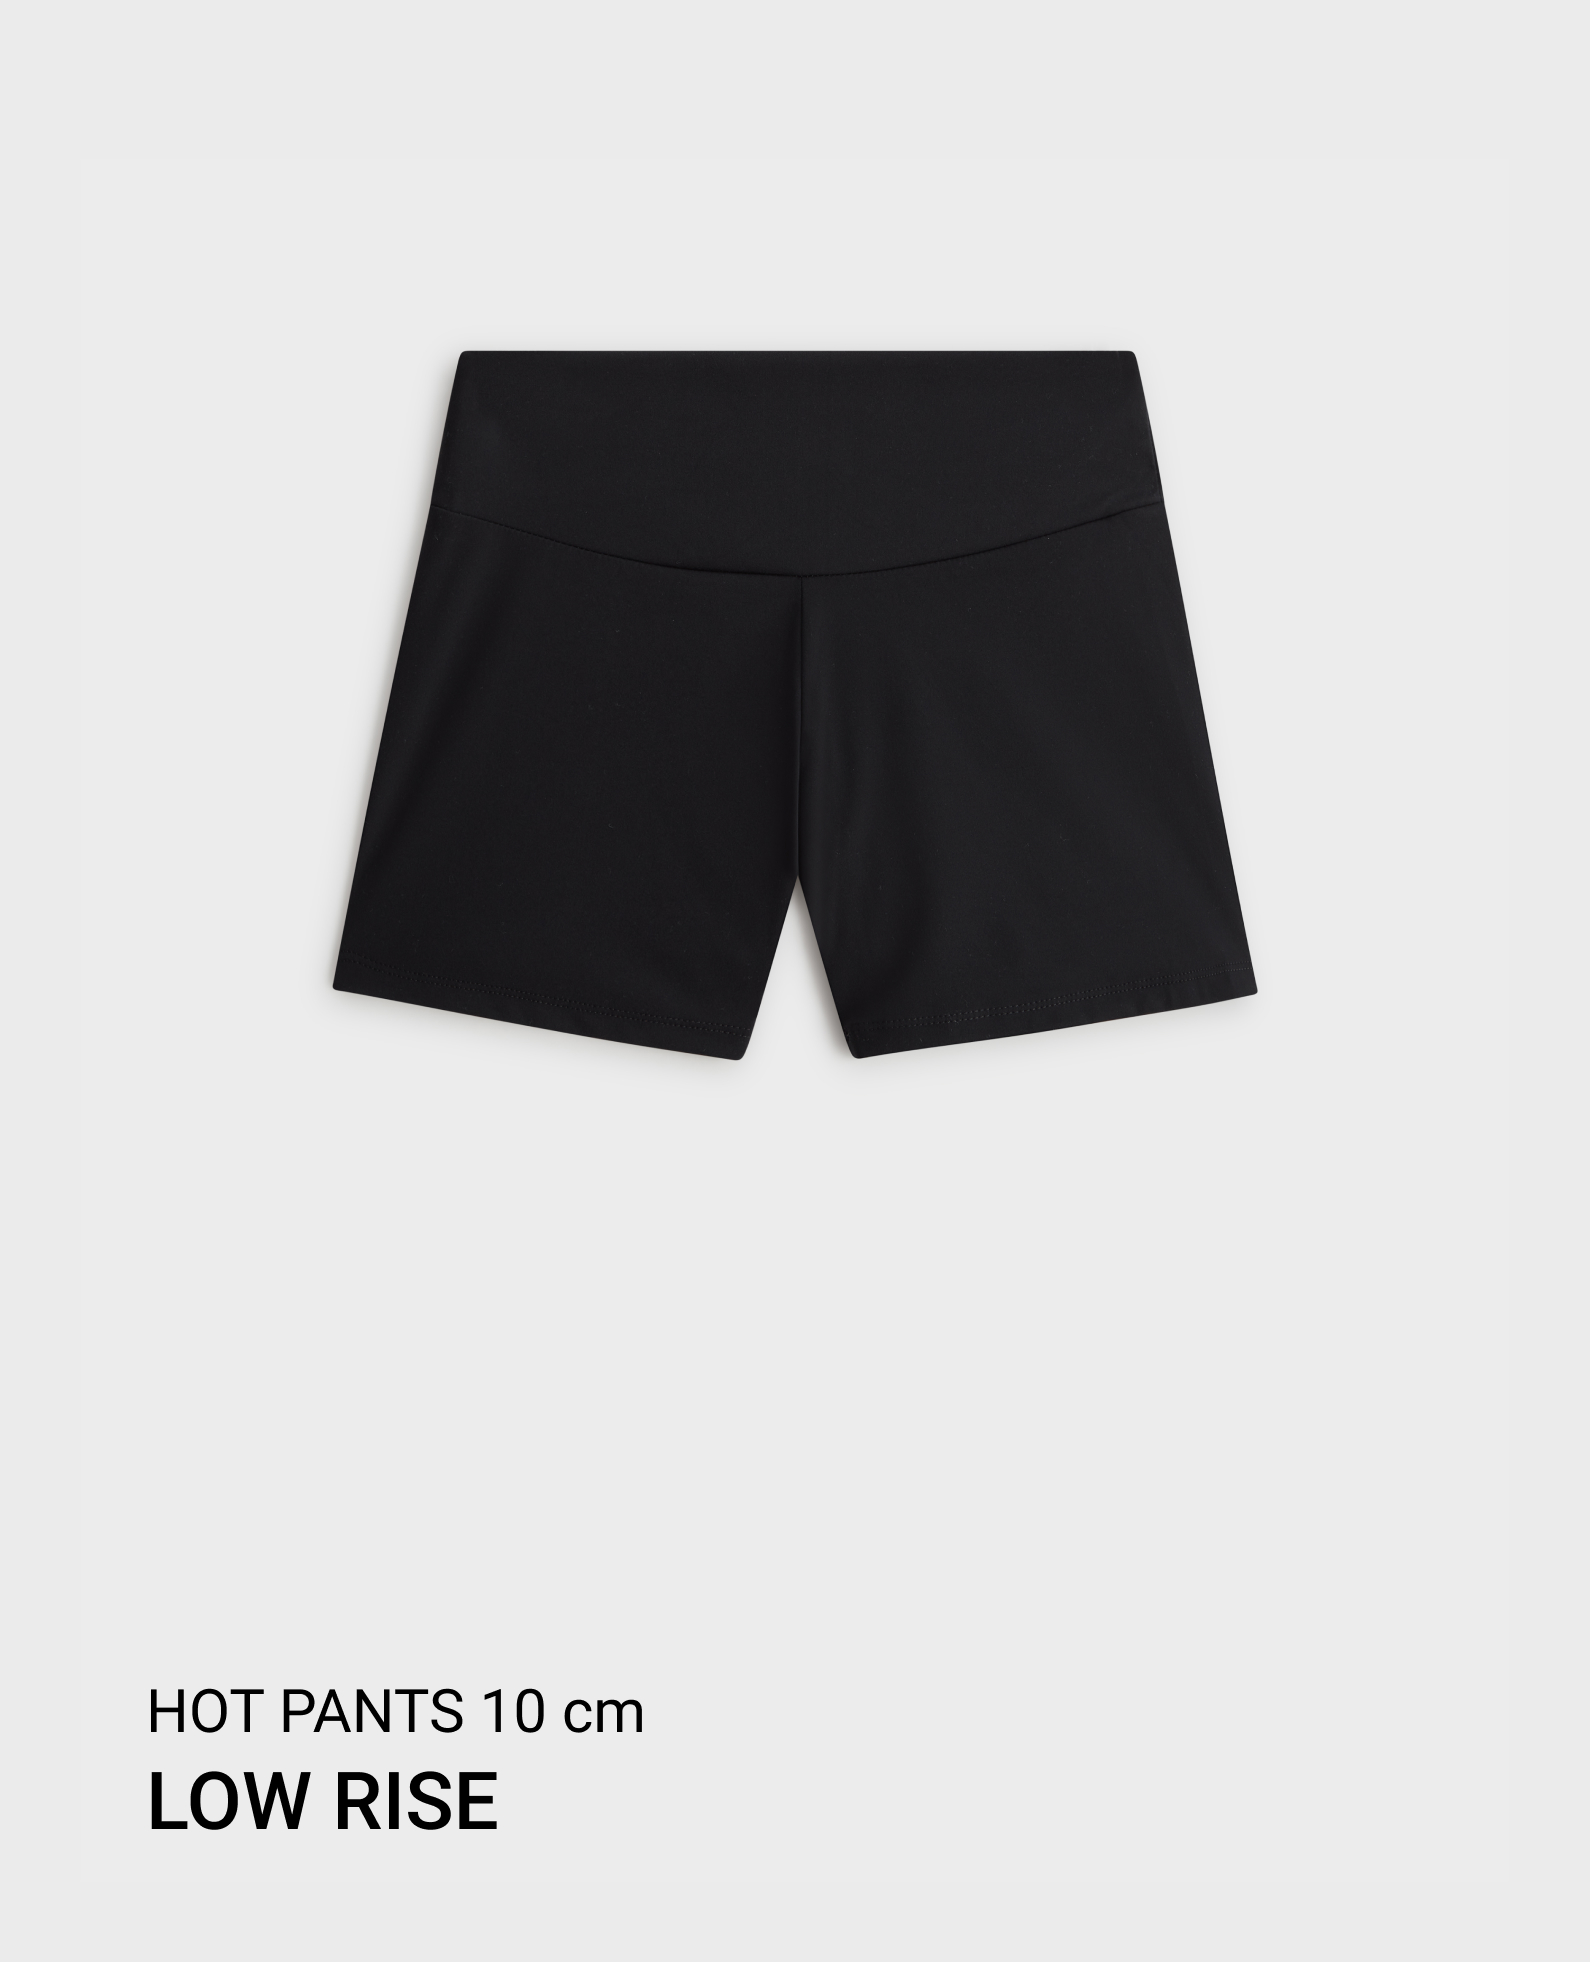 Hot pants low rise comfortlux 10 cm